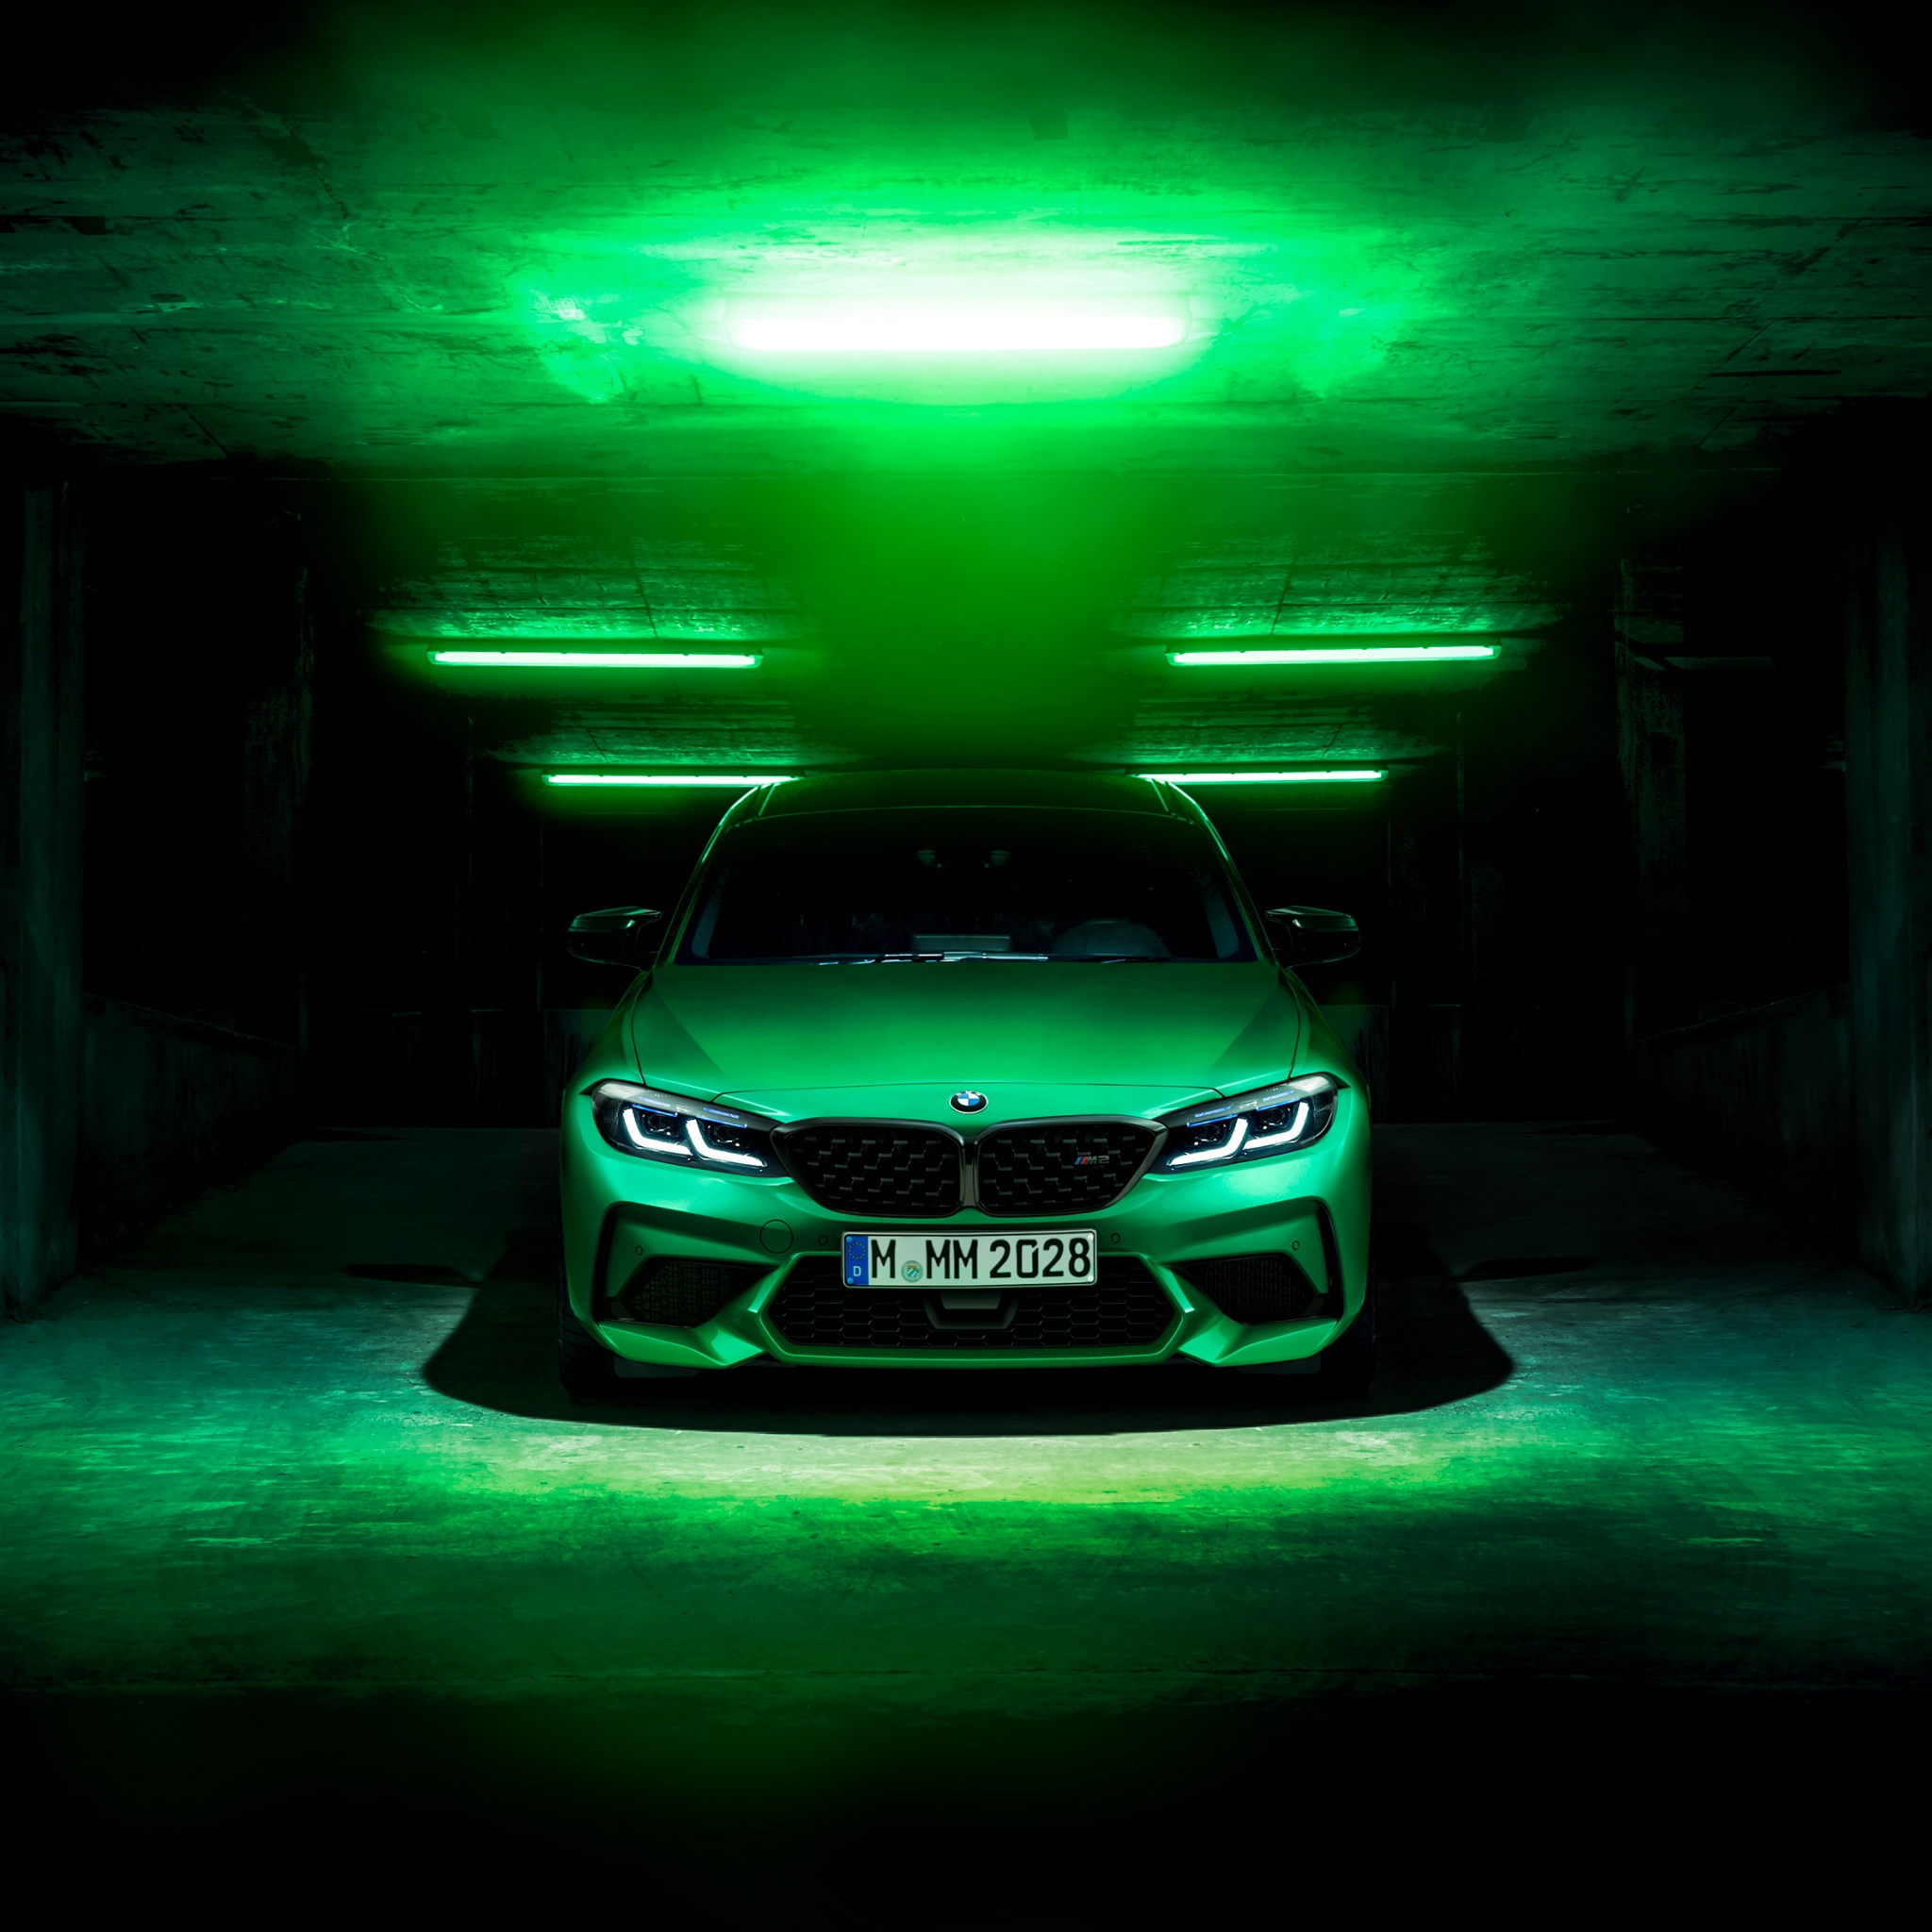 BMW M2 Wallpaper 4K, Green, Dark background, Cars, #4095